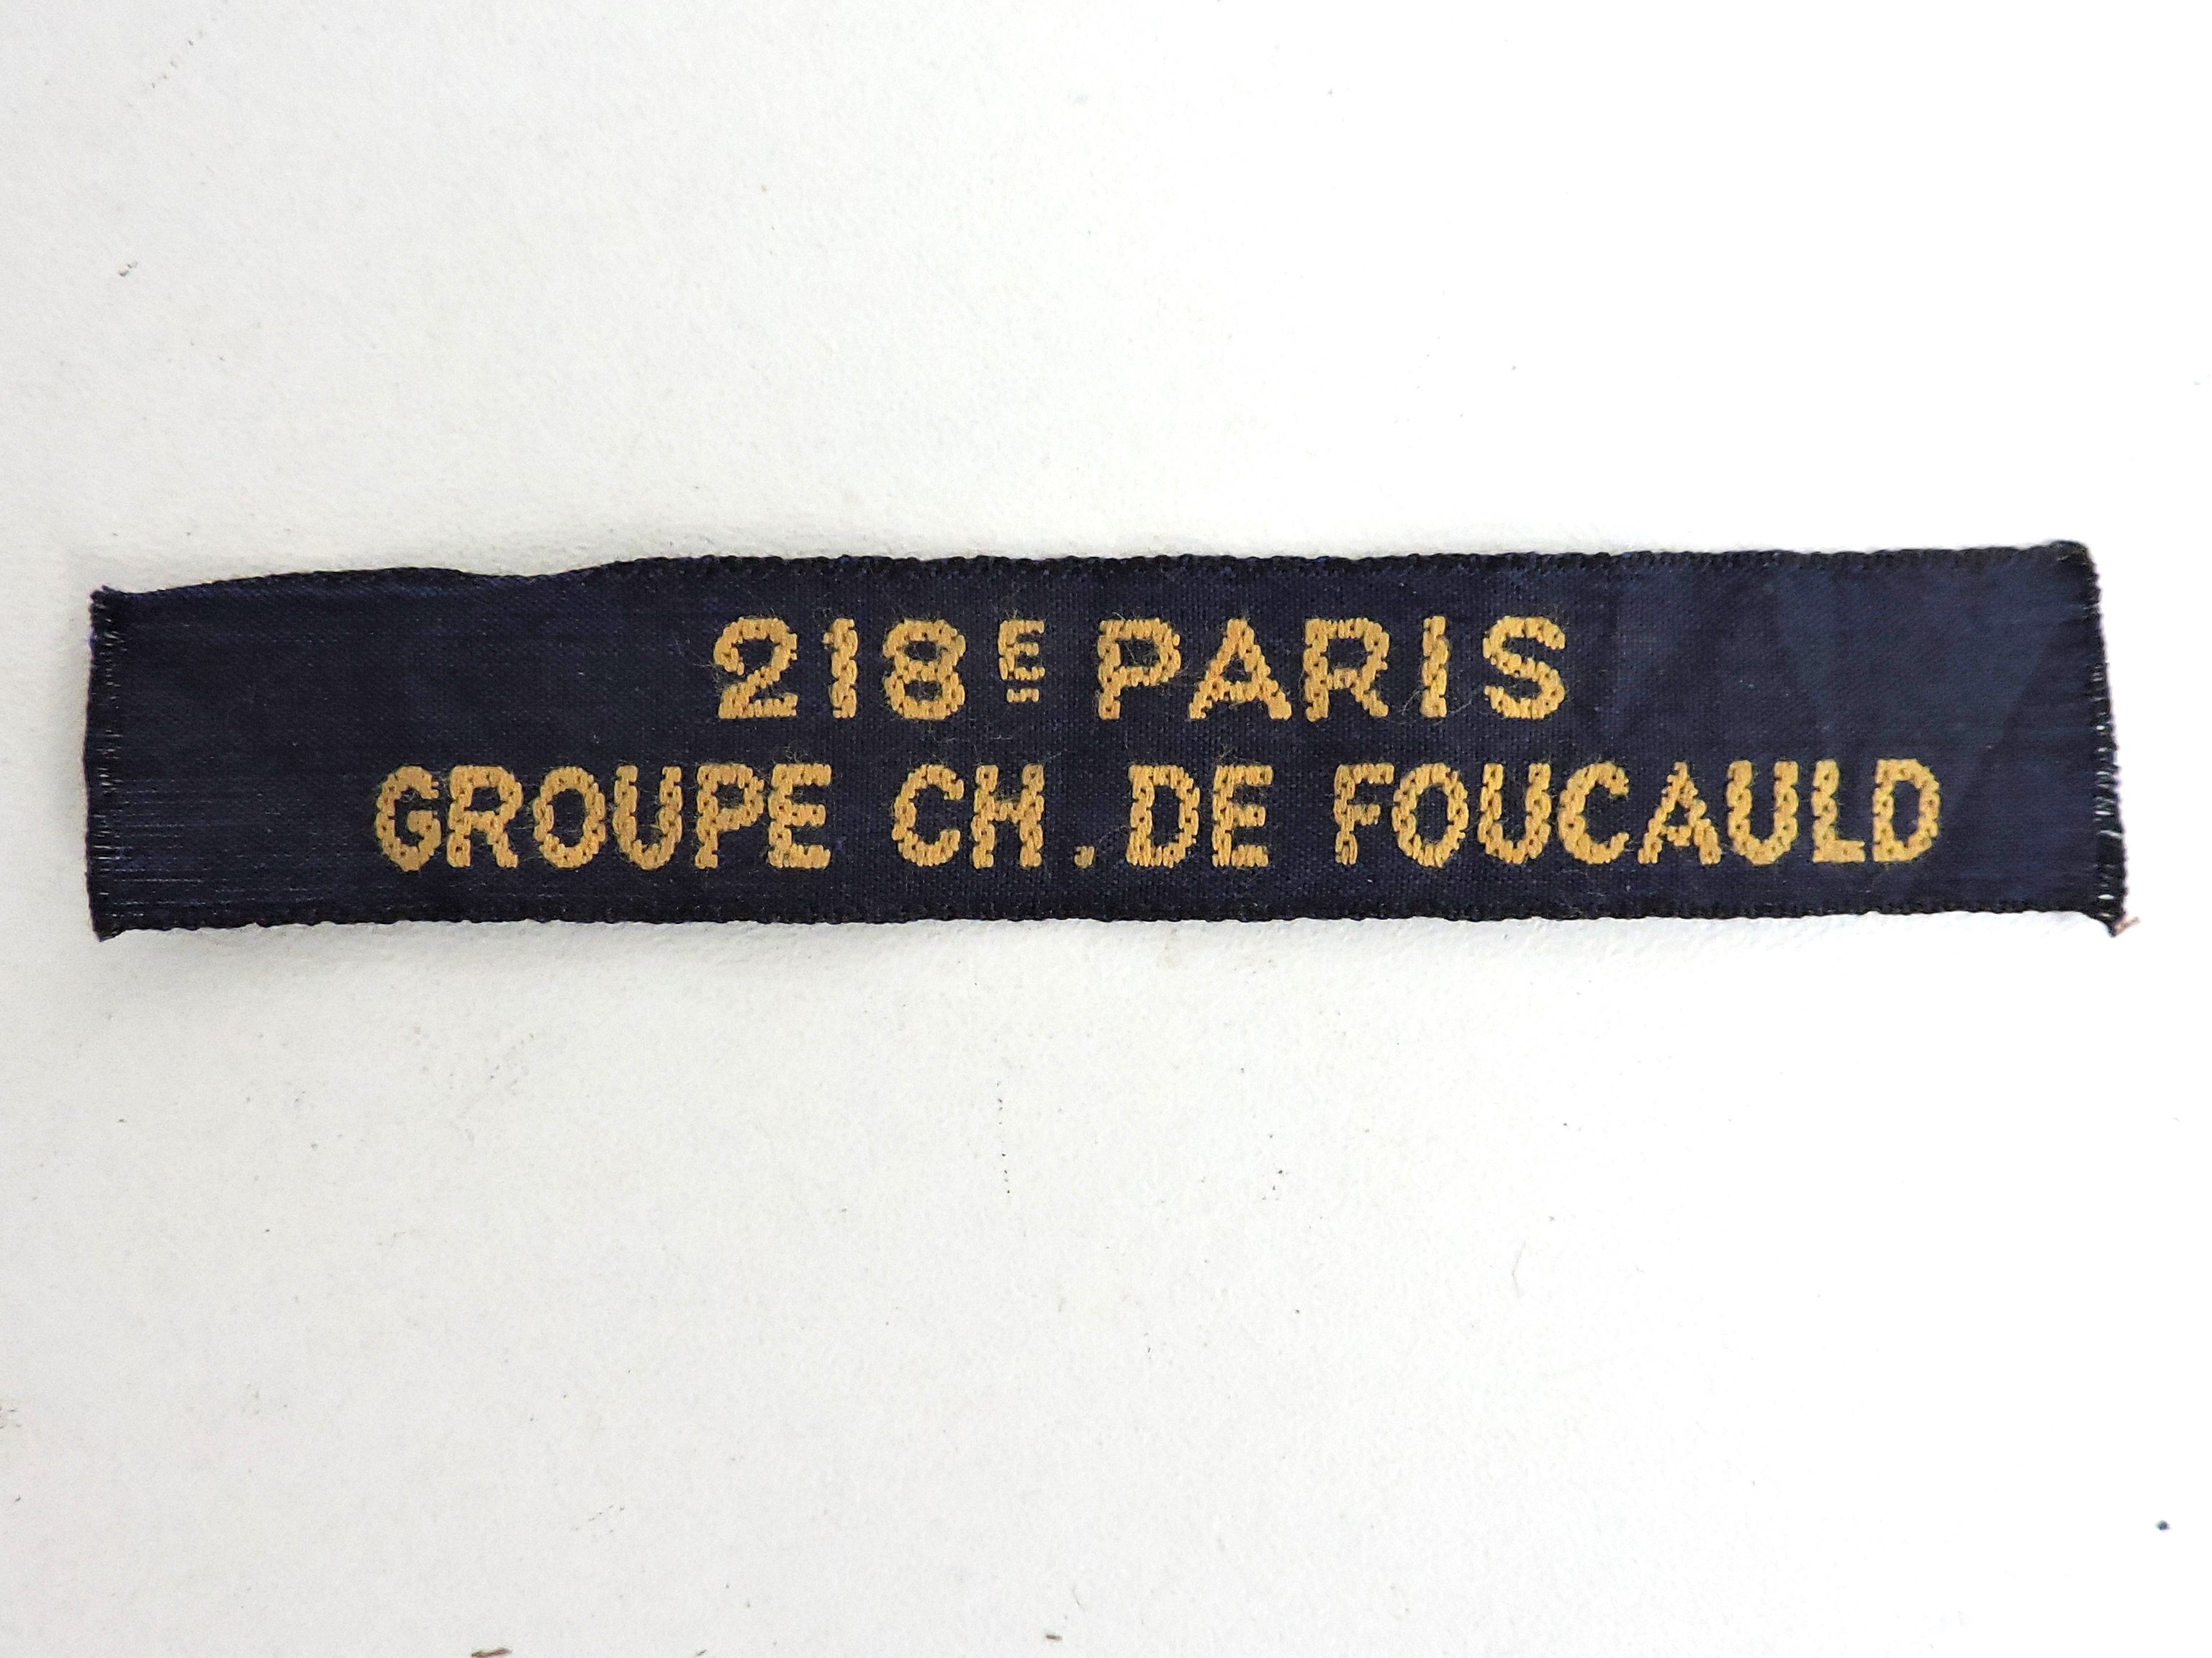 Insigne de groupe 218&deg; Paris Charles de Foucauld